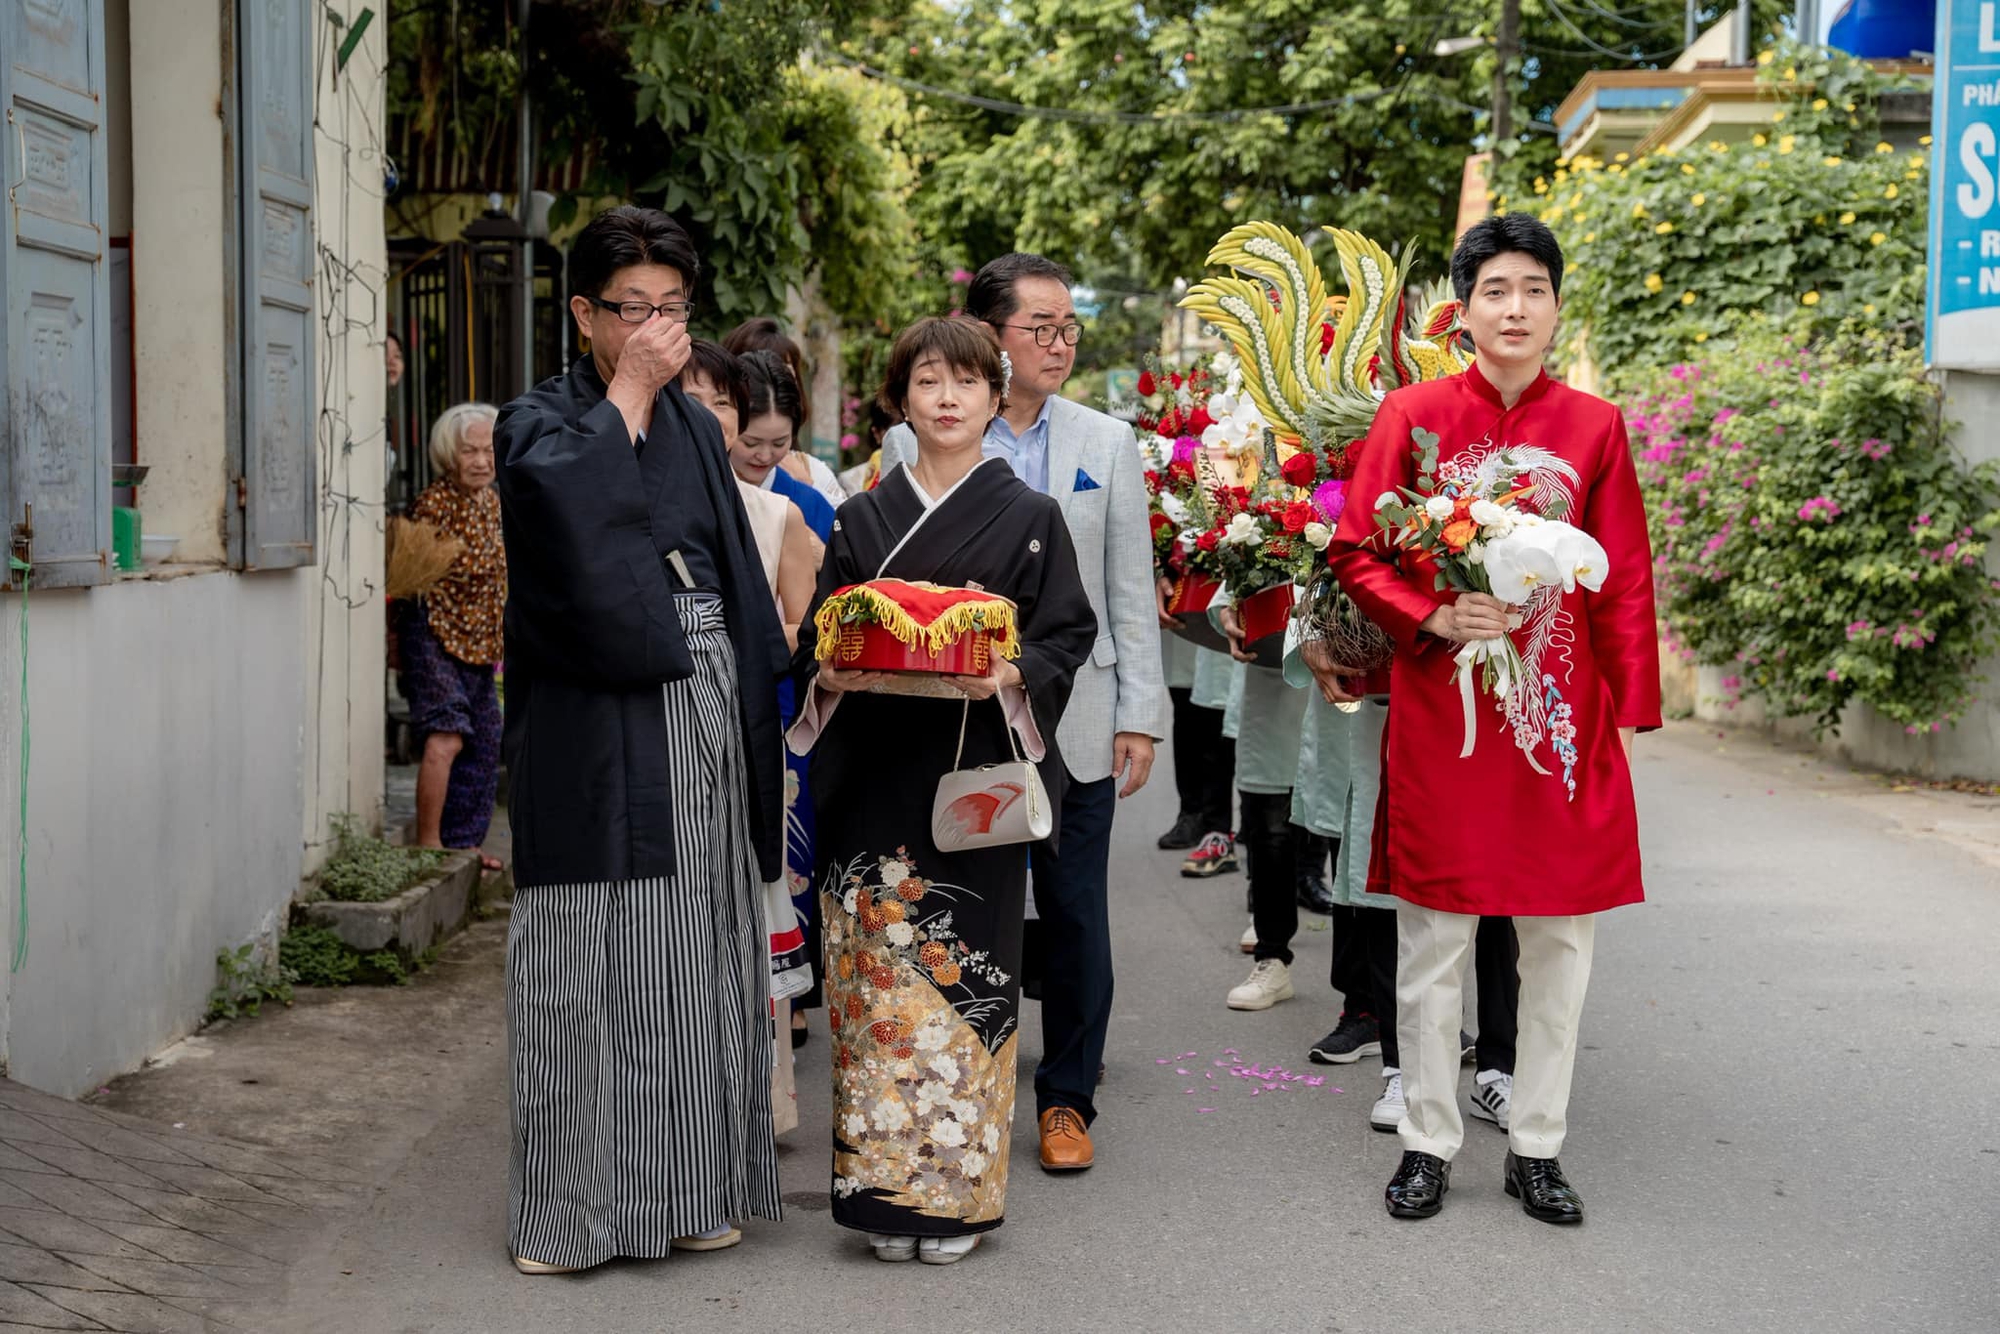 Đám cưới đặc biệt của chú rể Nhật và cô dâu Việt nhận 'mưa tim' - Ảnh 1.